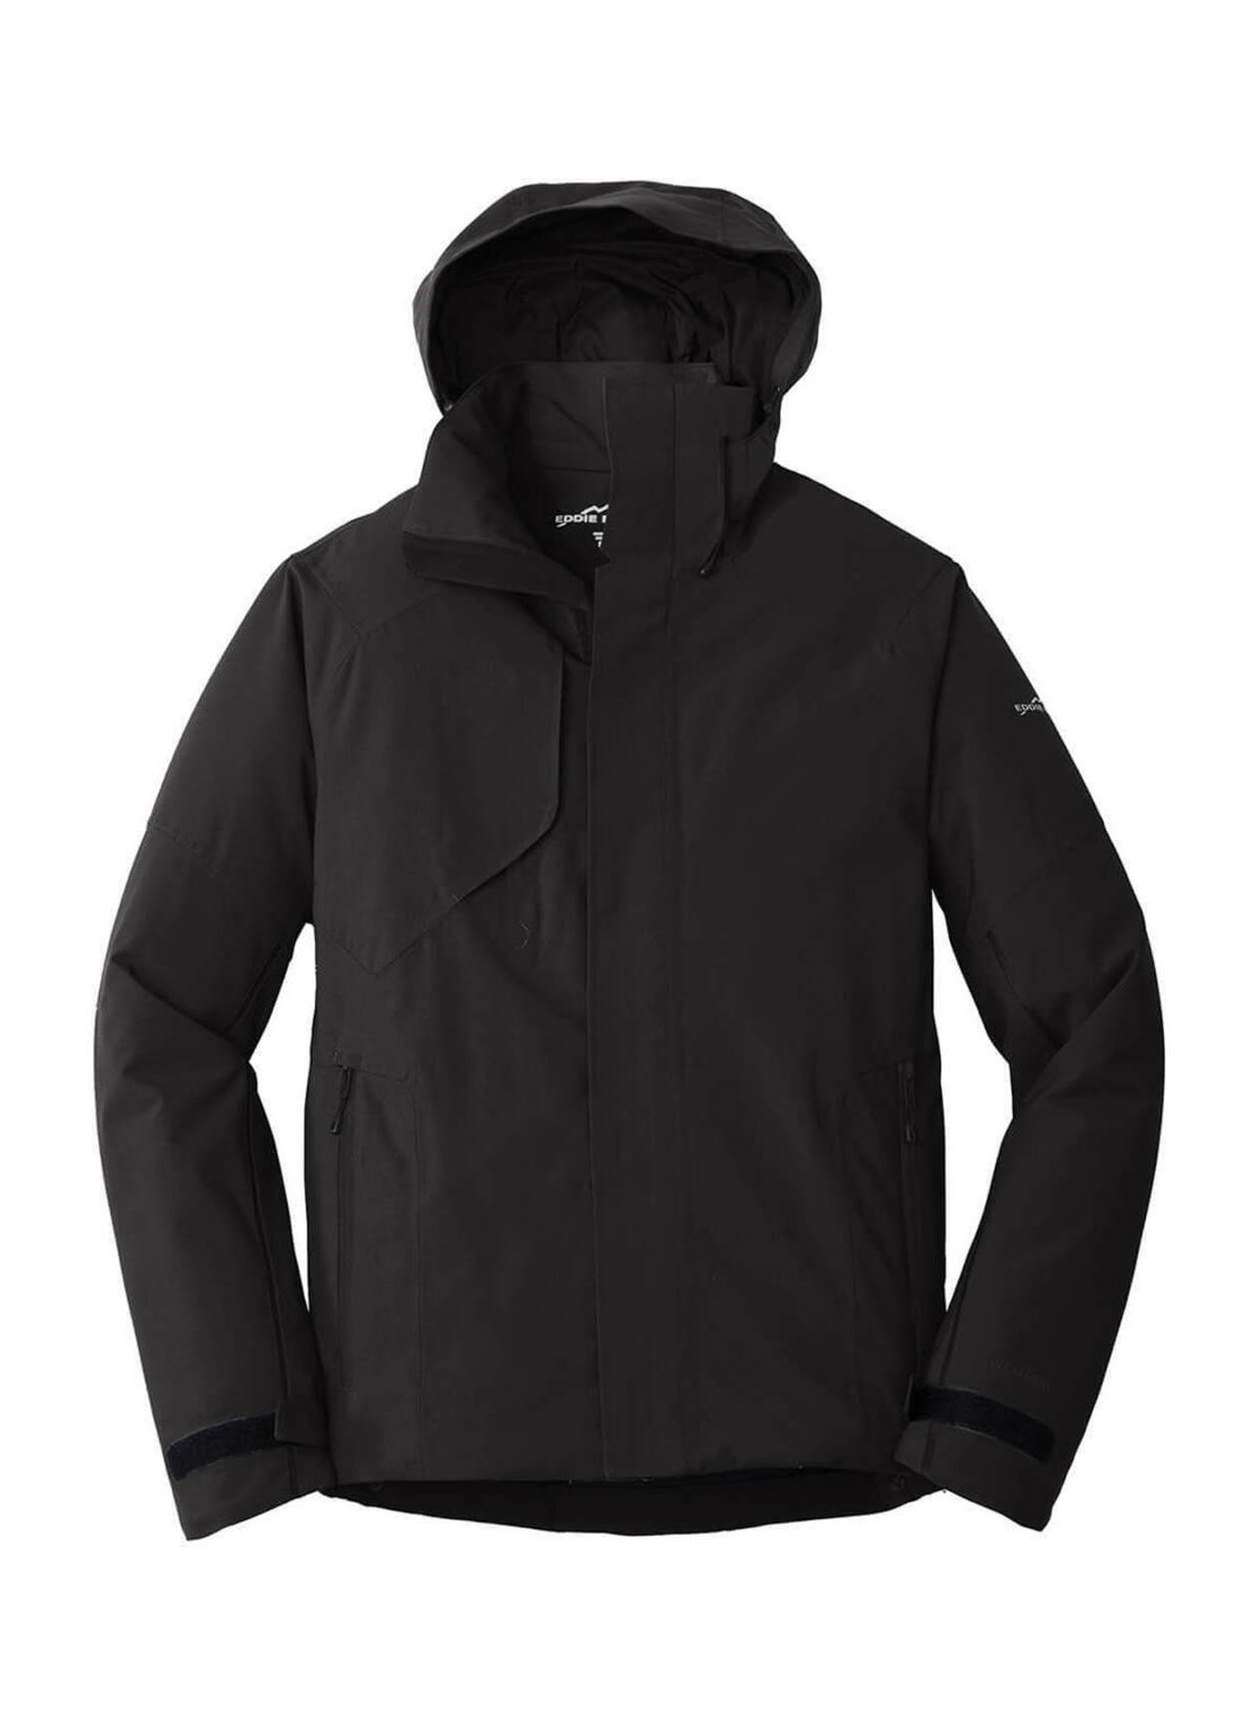 Eddie Bauer Men's Black WeatherEdge Plus Insulated Jacket